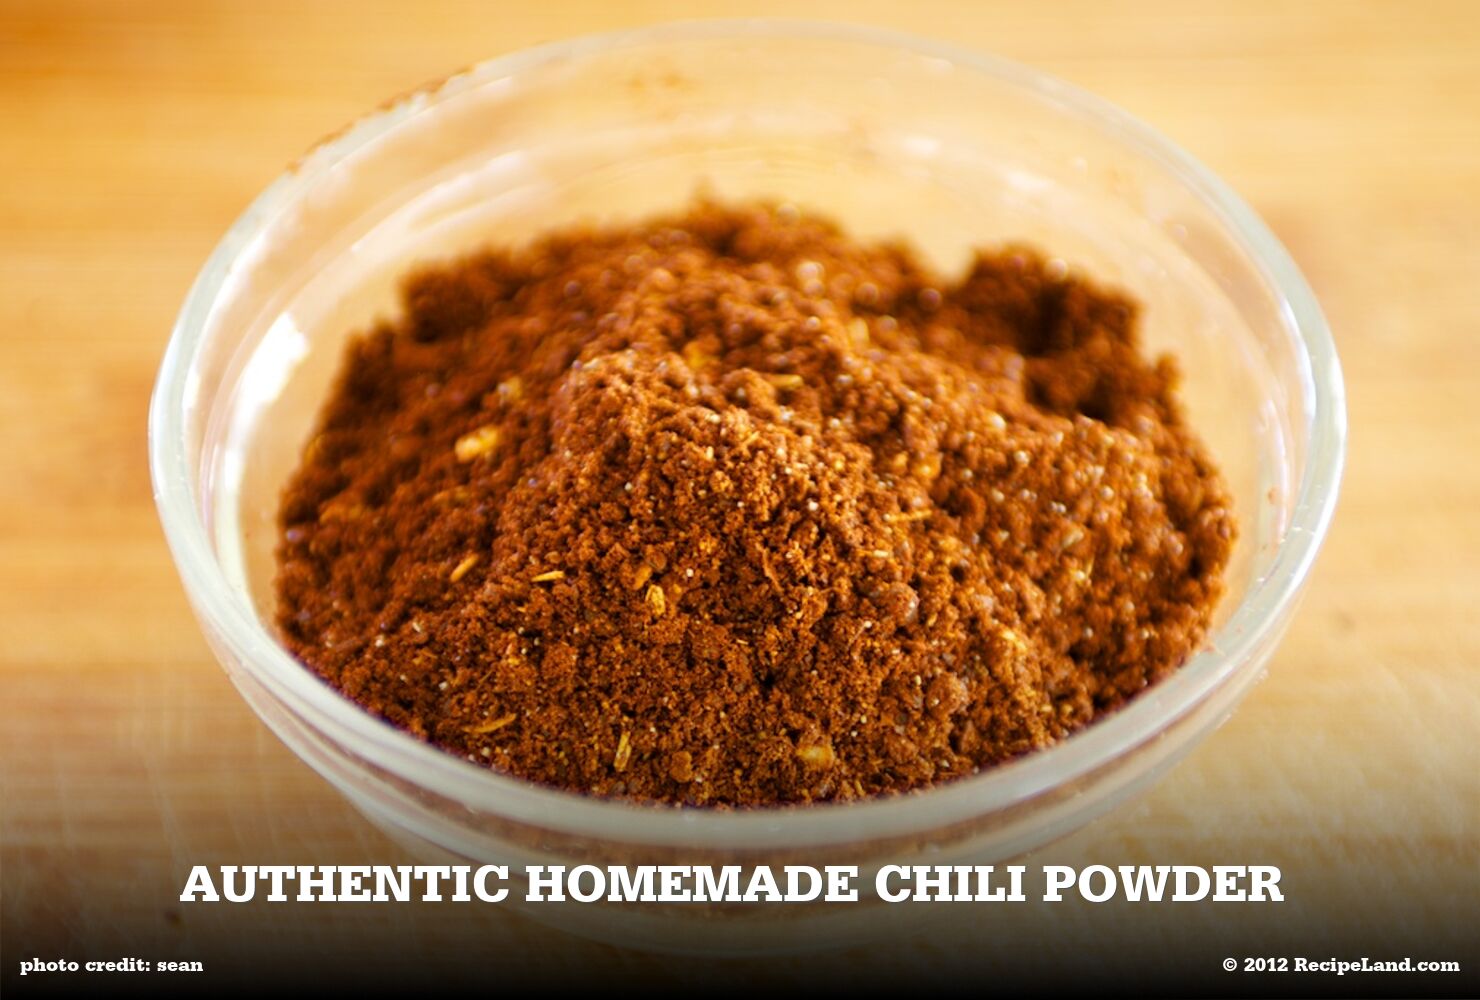 Homemade chili powder